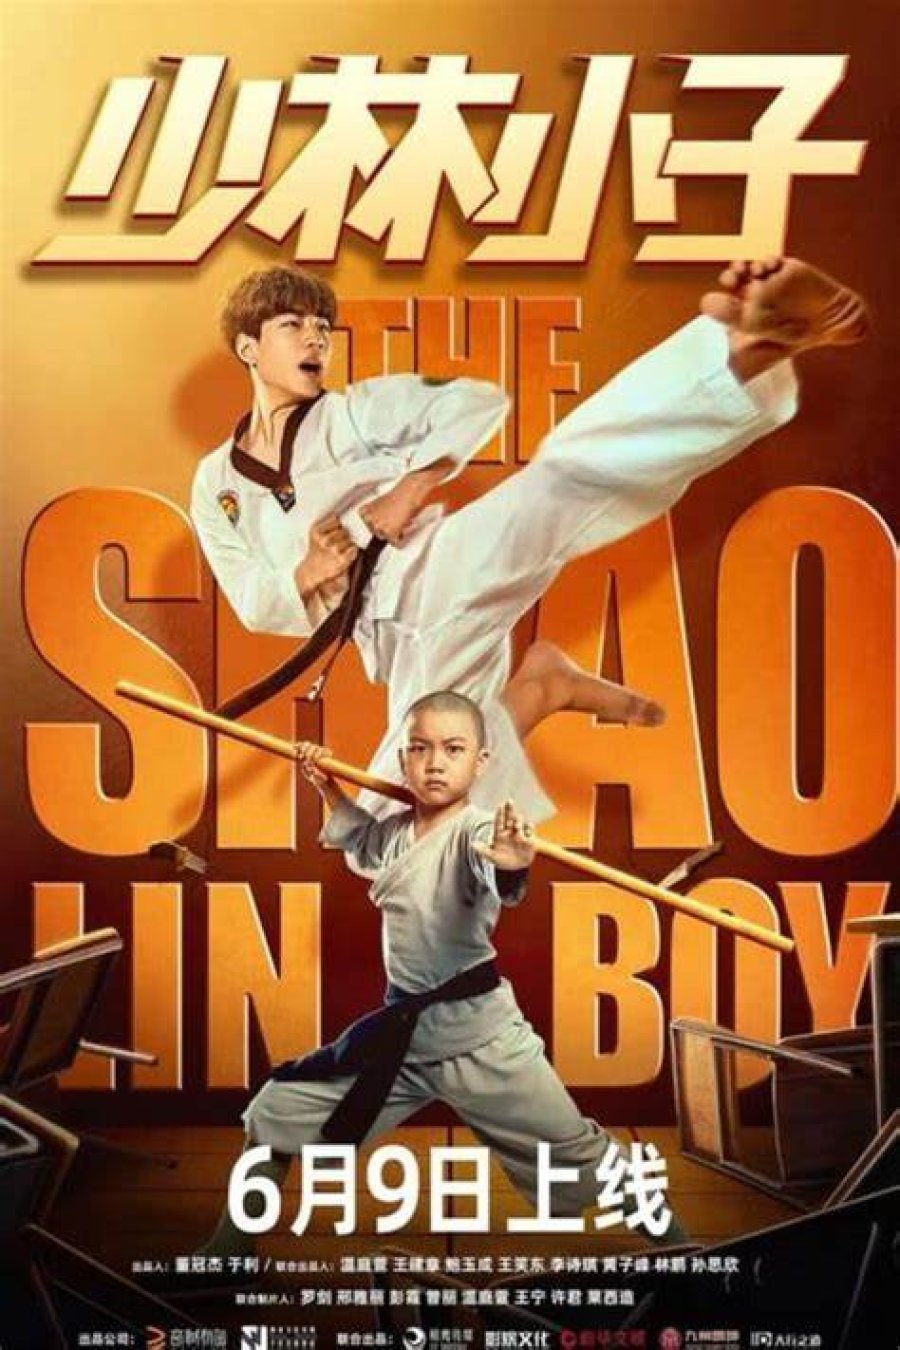 The Shaolin Boy (2021) เจ้าหนูเส้าหลิน